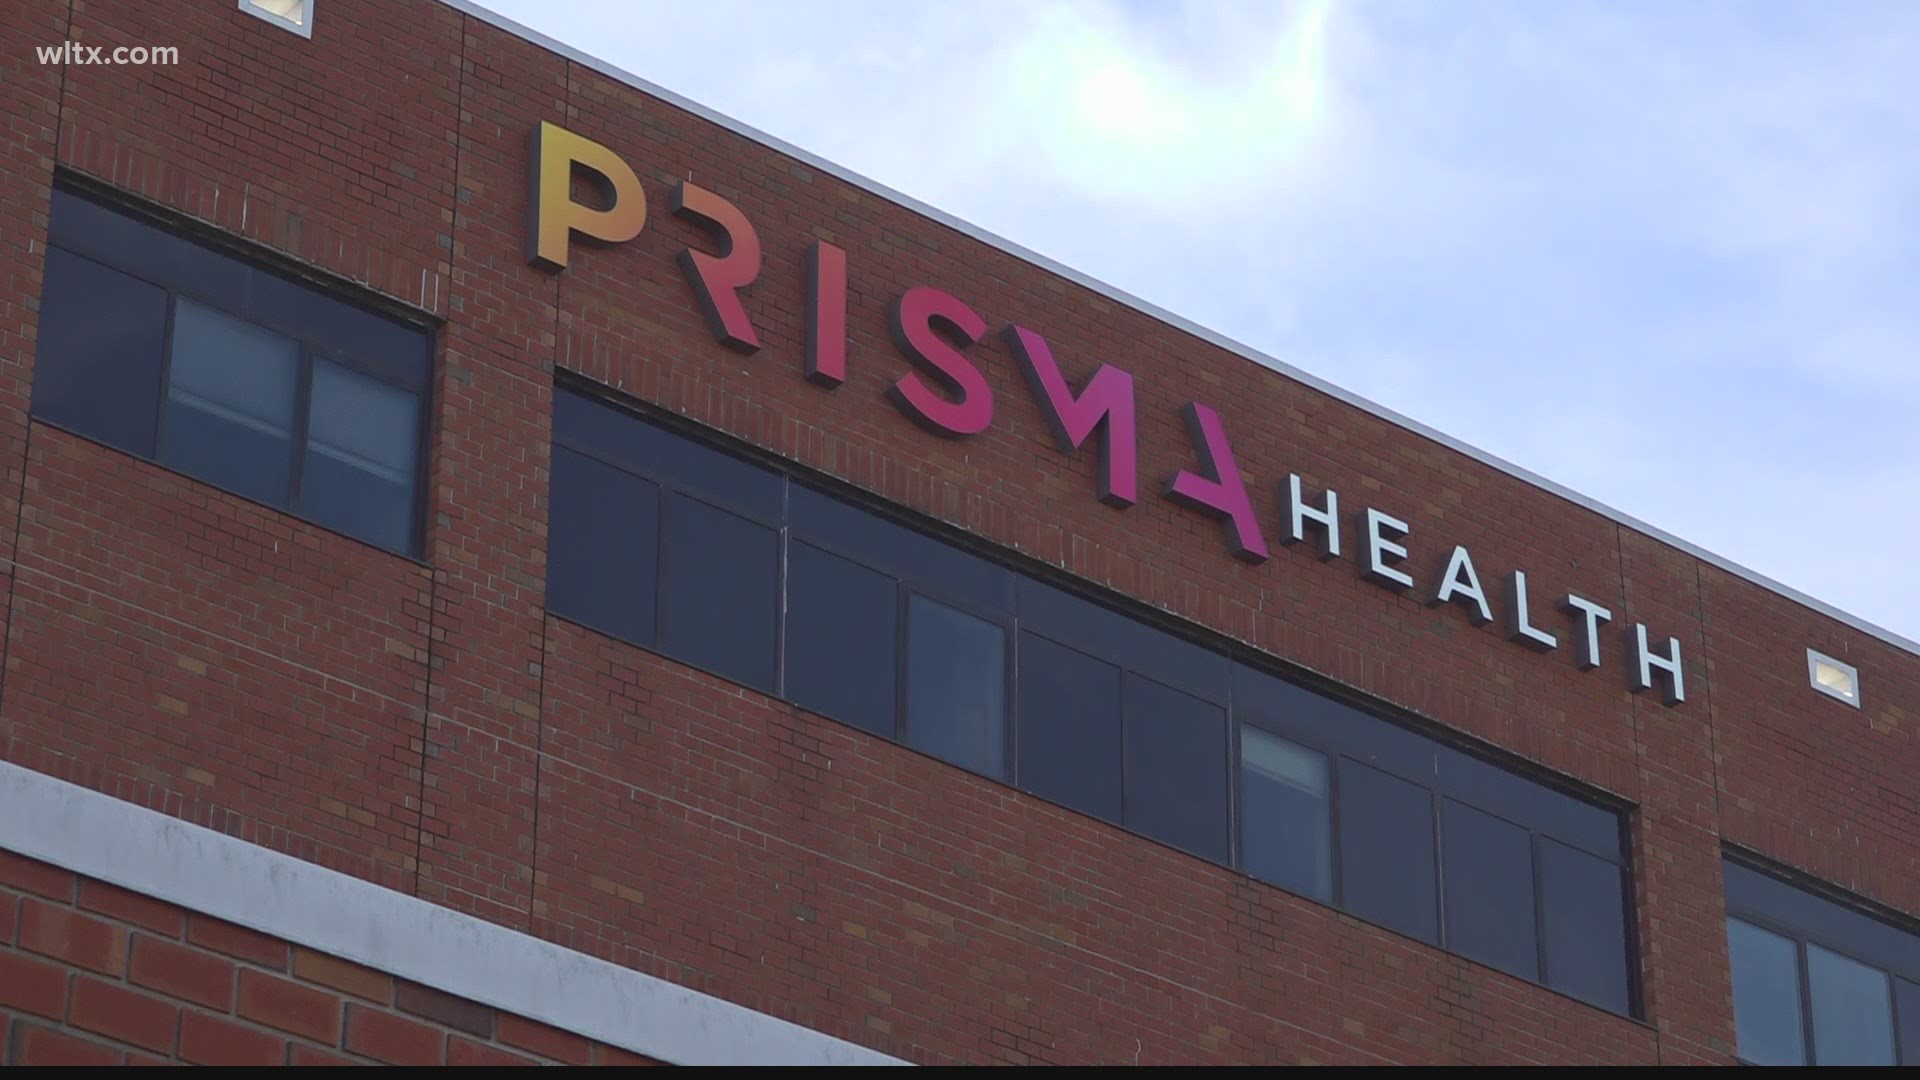 prism health lab chinatown